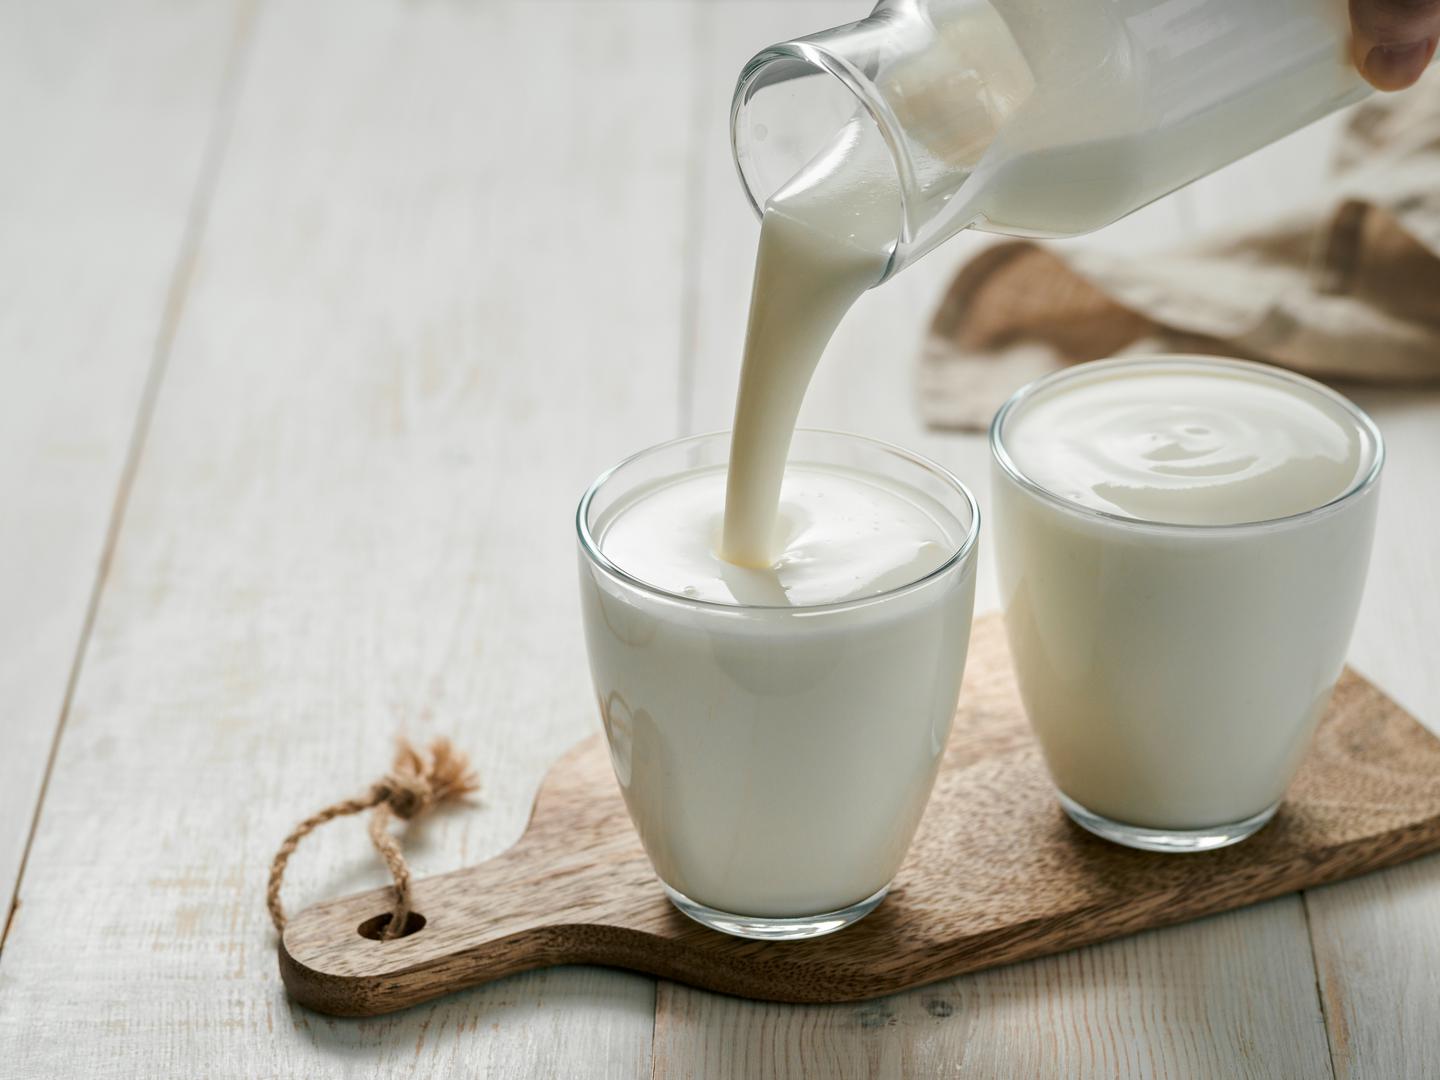 Konzumiranje hrane poput jogurta koja je bogata probioticima može povećati dobre bakterije u vašem crijevnom mikrobiomu. Grčki jogurt posebno je koristan za imunološki sustav, jer osigurava visokokvalitetne proteine ​​i pomaže diverzifikaciju sojeva bakterija u crijevima. Kombinirajte jogurt s mješavinom bobičastog voća i granola za povećani unos vitamina C i vlakana.